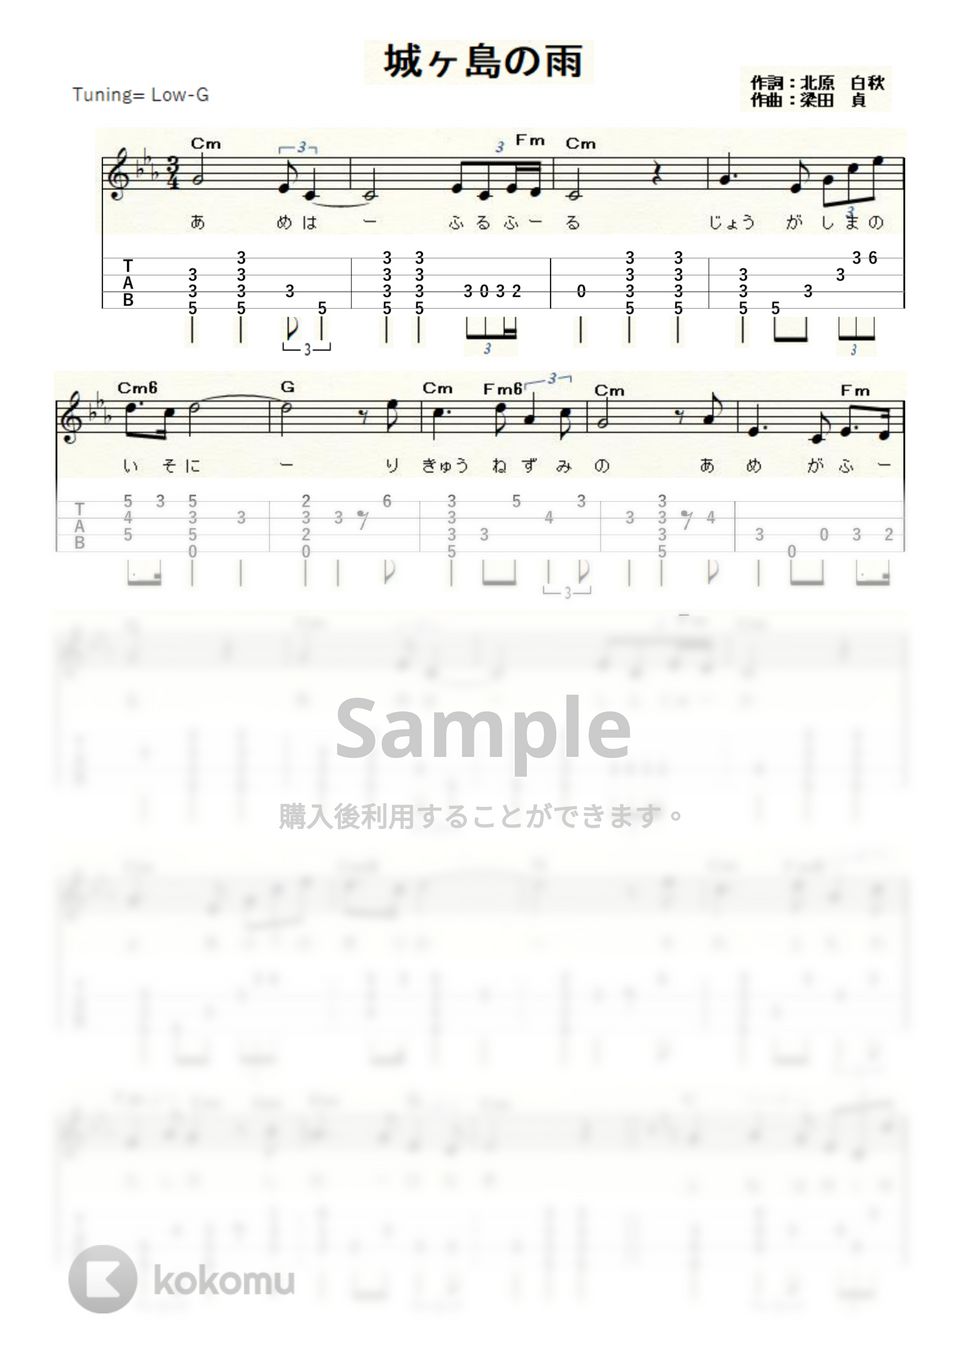 北原白秋 - 城ヶ島の雨 (ｳｸﾚﾚｿﾛ / Low-G / 中級) by ukulelepapa